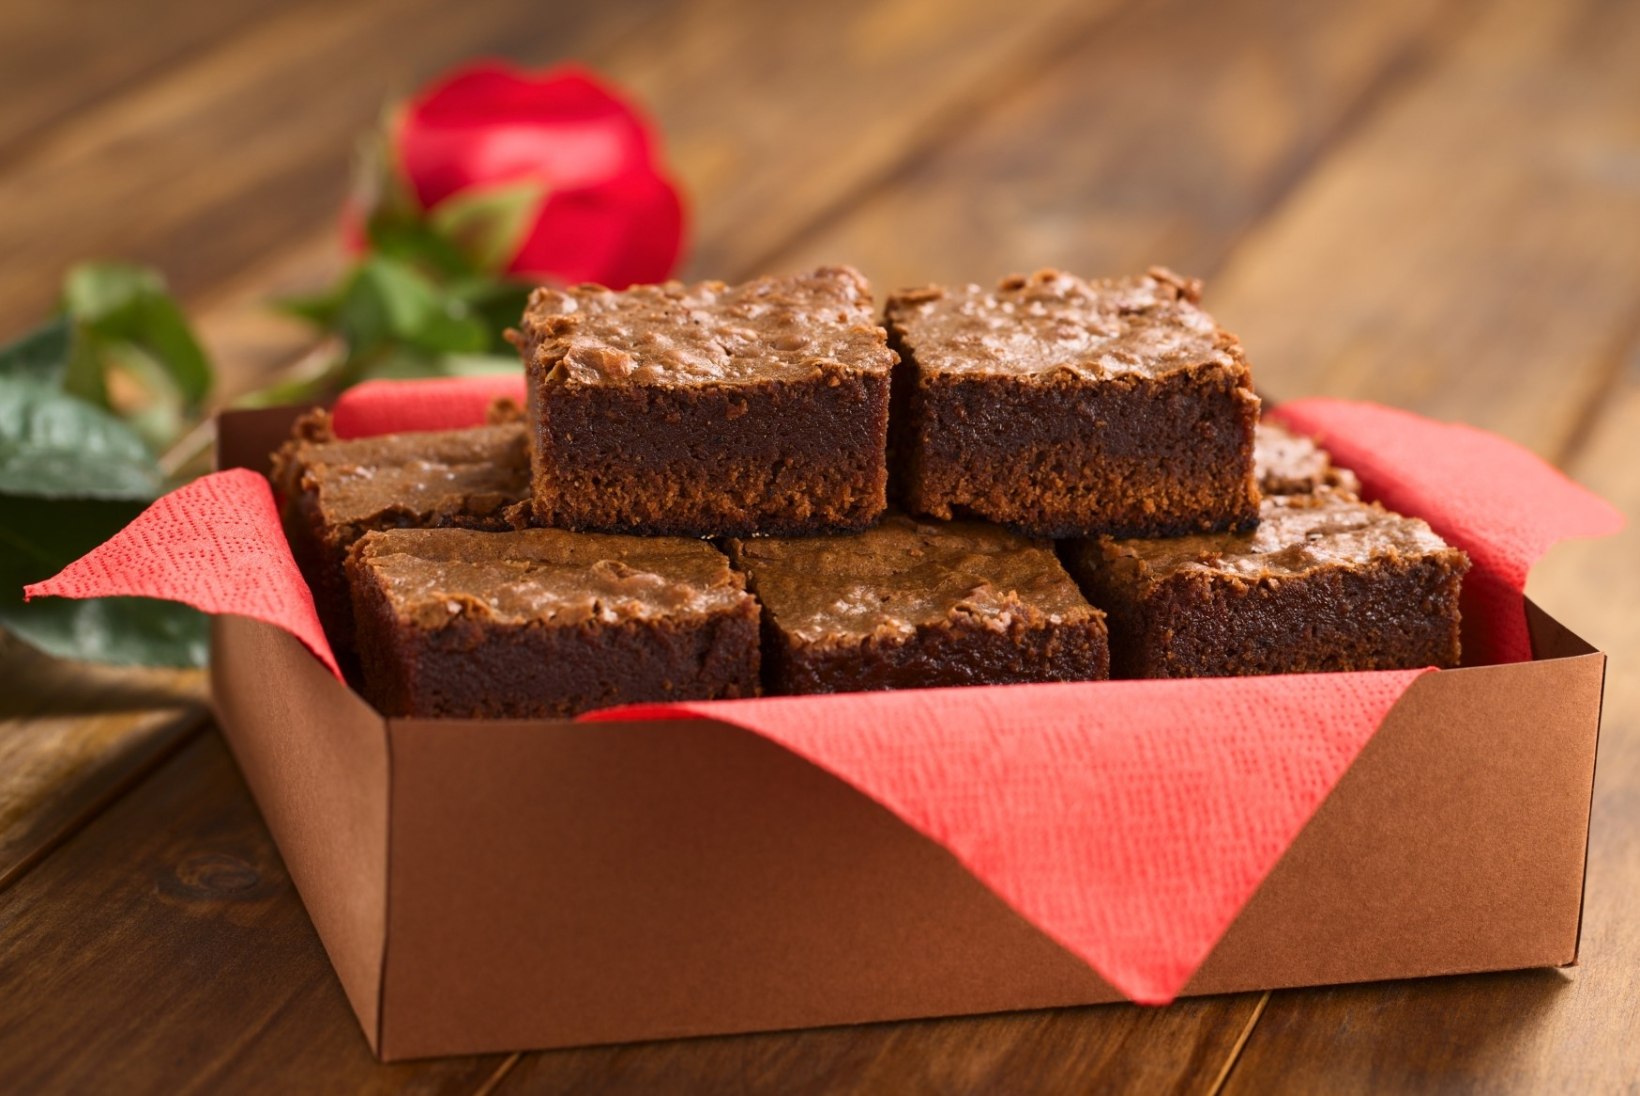 Tervislik kook: Mustade ubadega brownie 